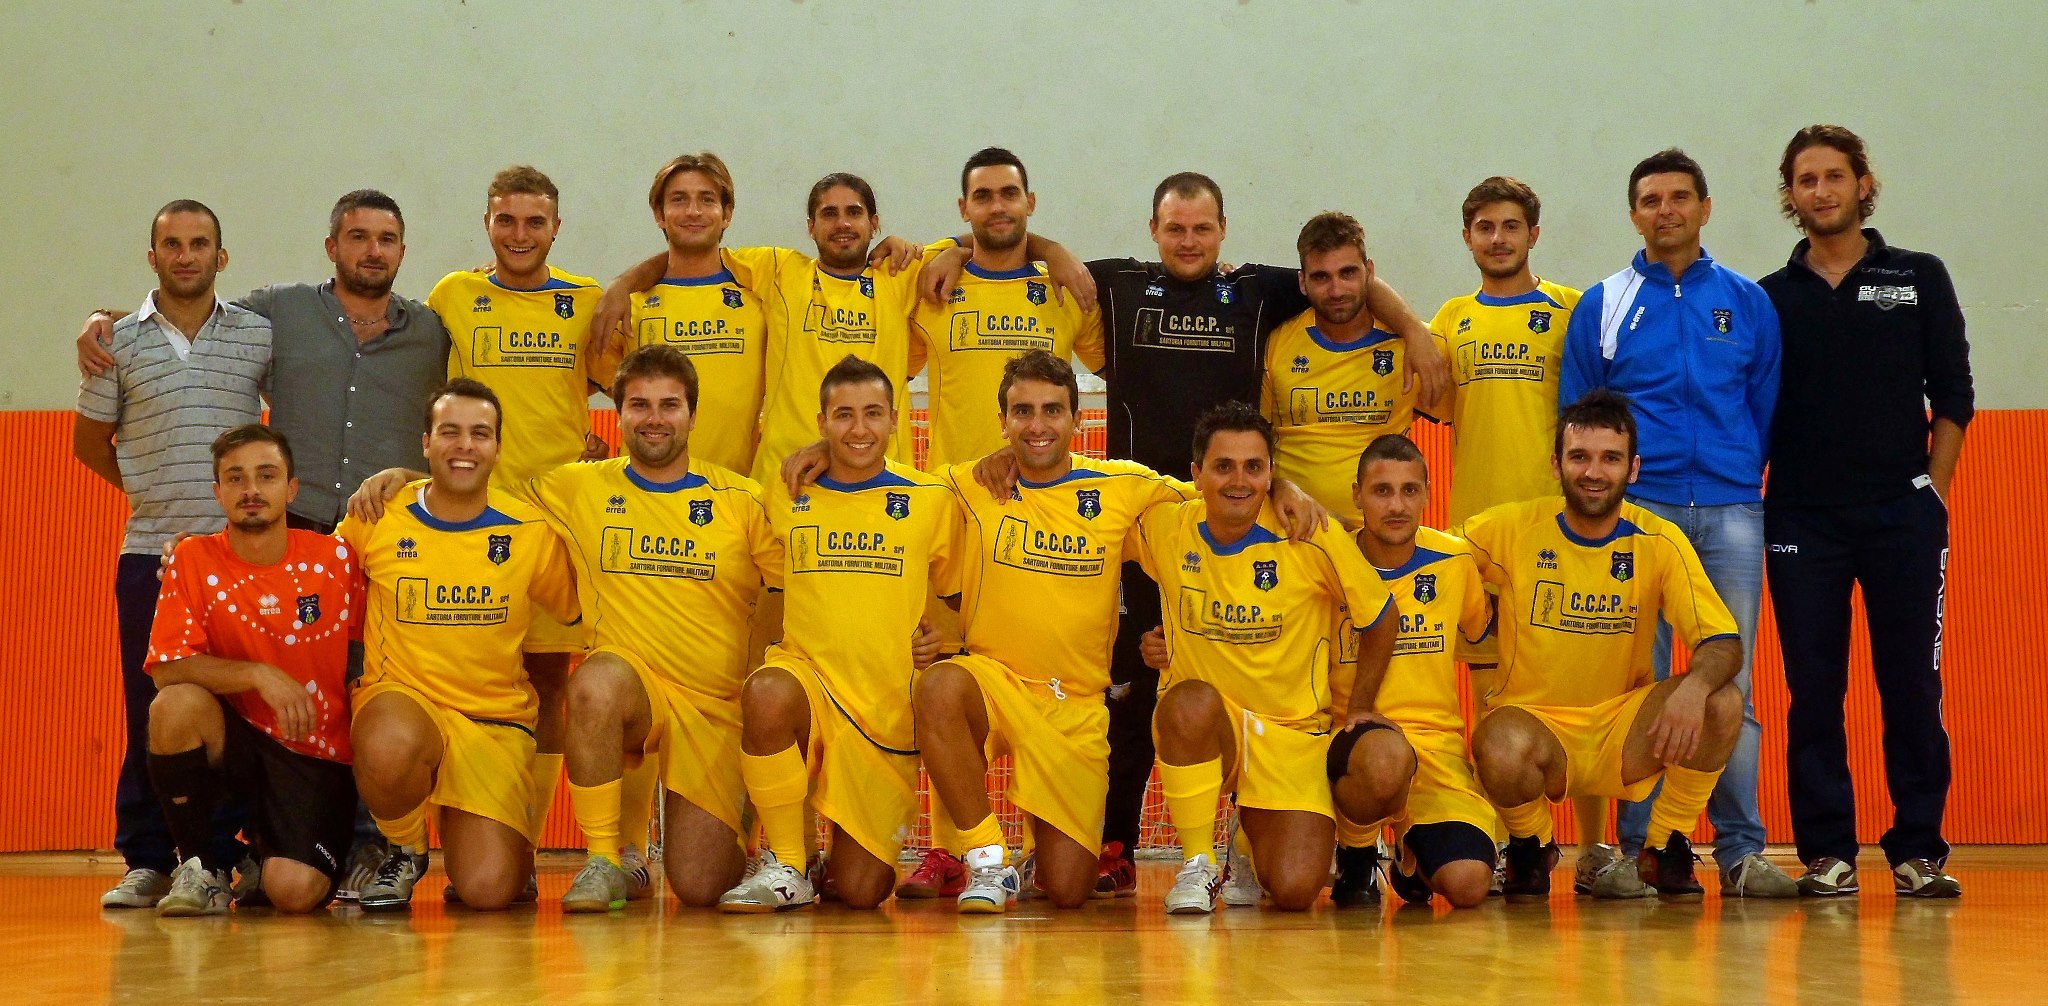 La squadra della Futsal Prandone agli albori